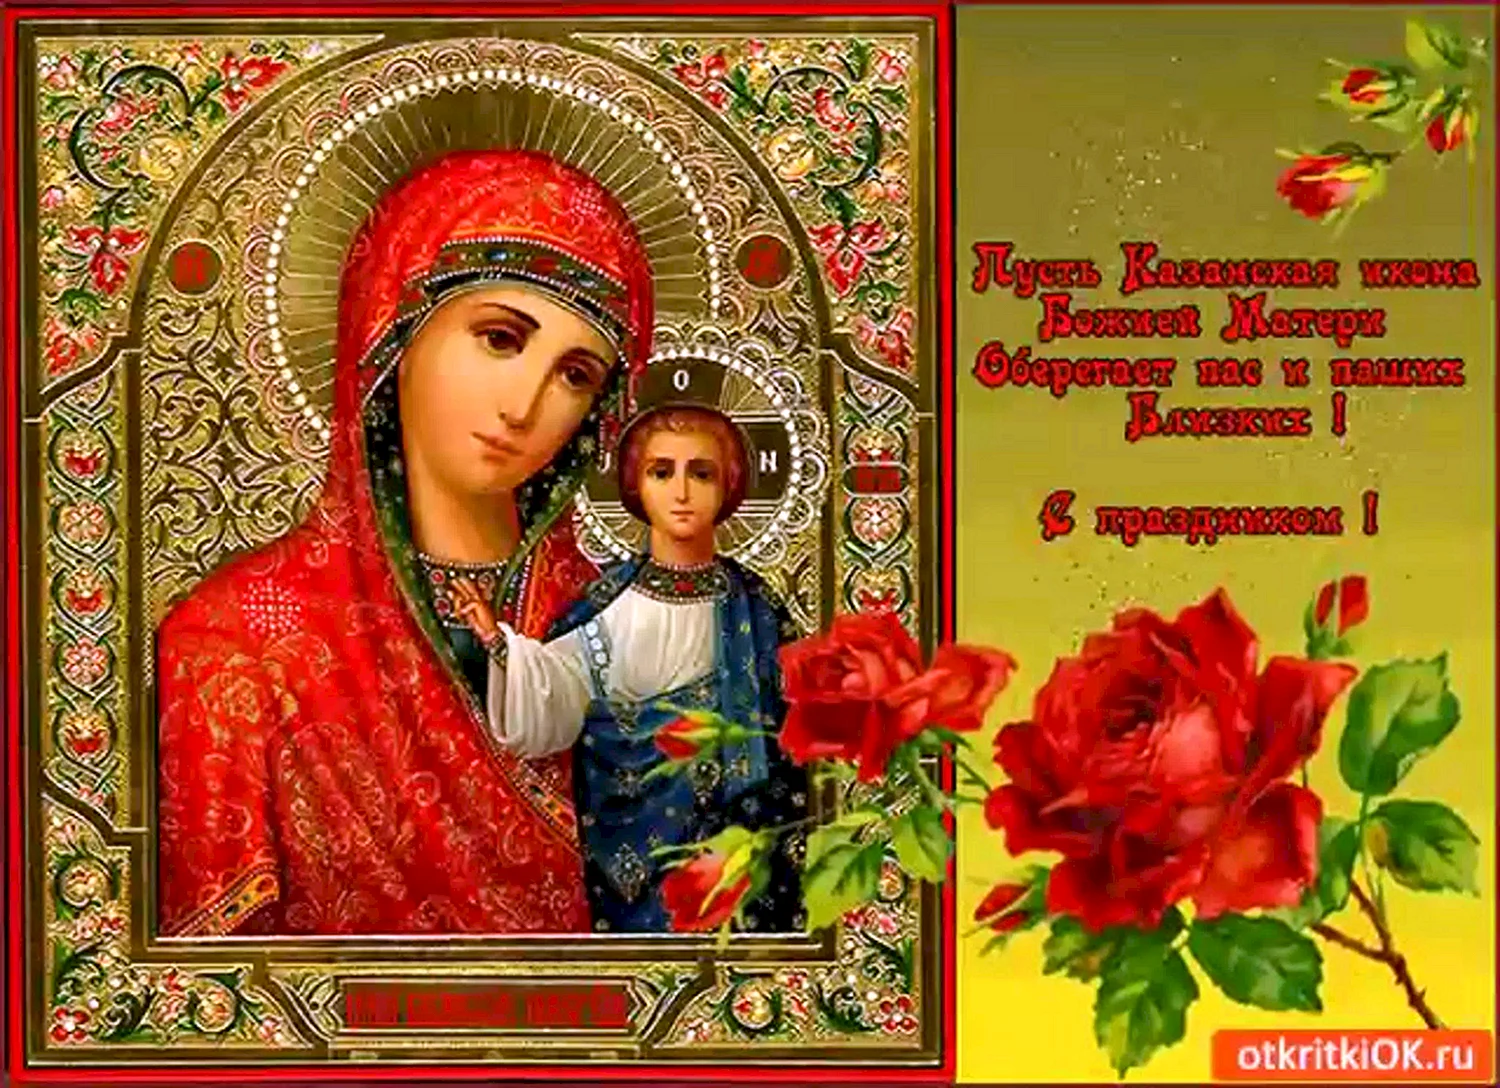 Картинки Казанской иконы: духовные обои на вашем экране